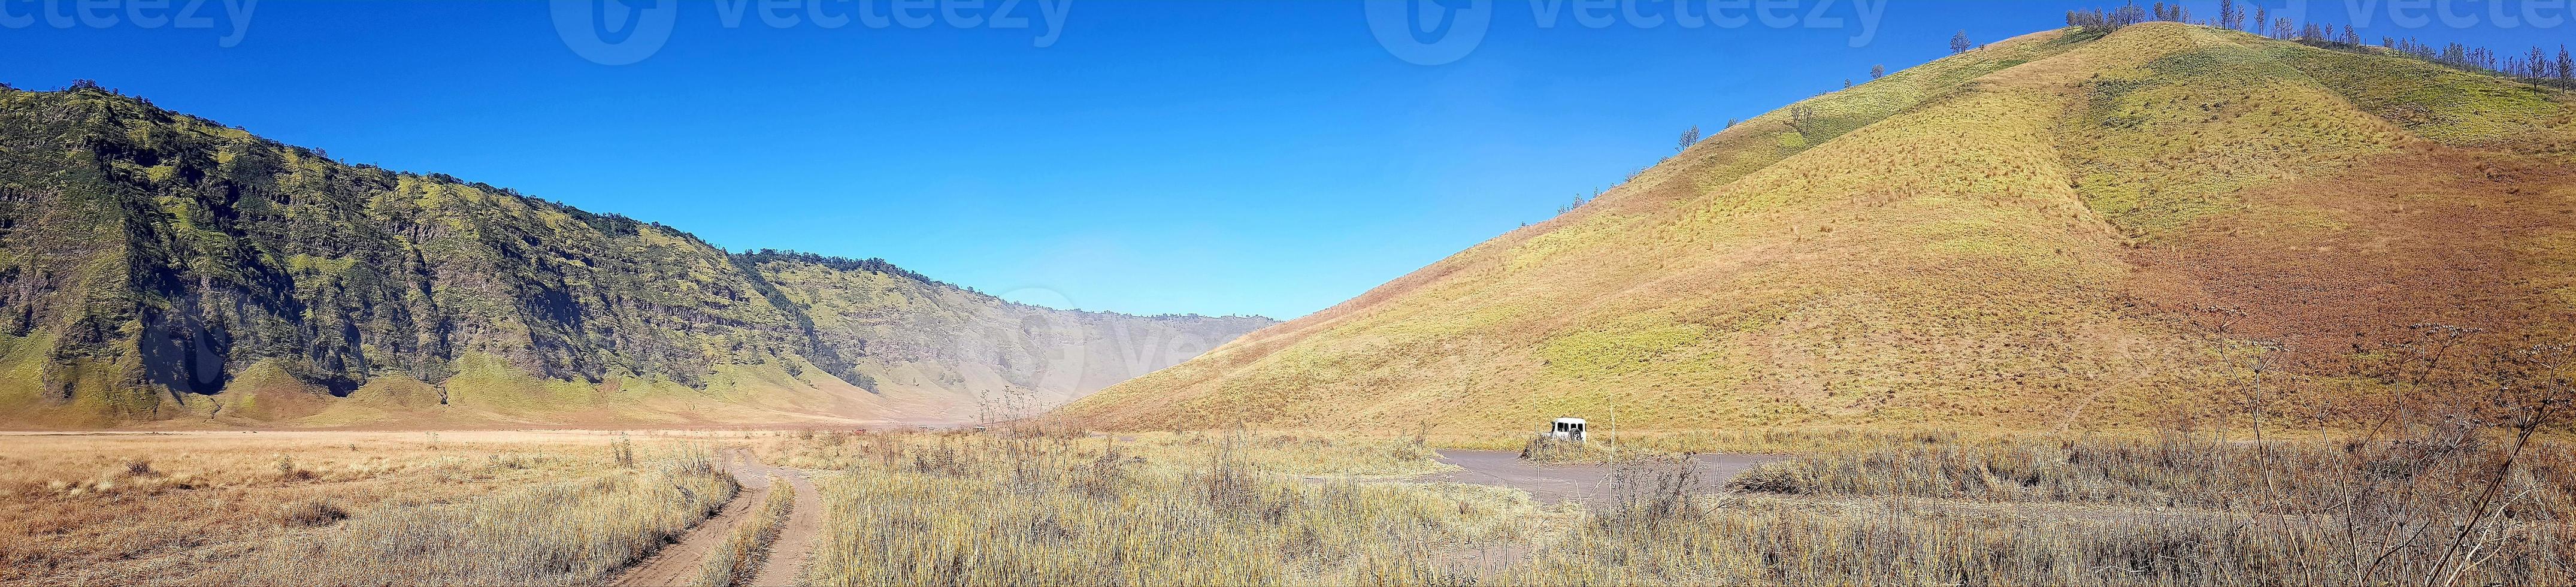 vista panorâmica da paisagem do monte bromo e seus arredores foto